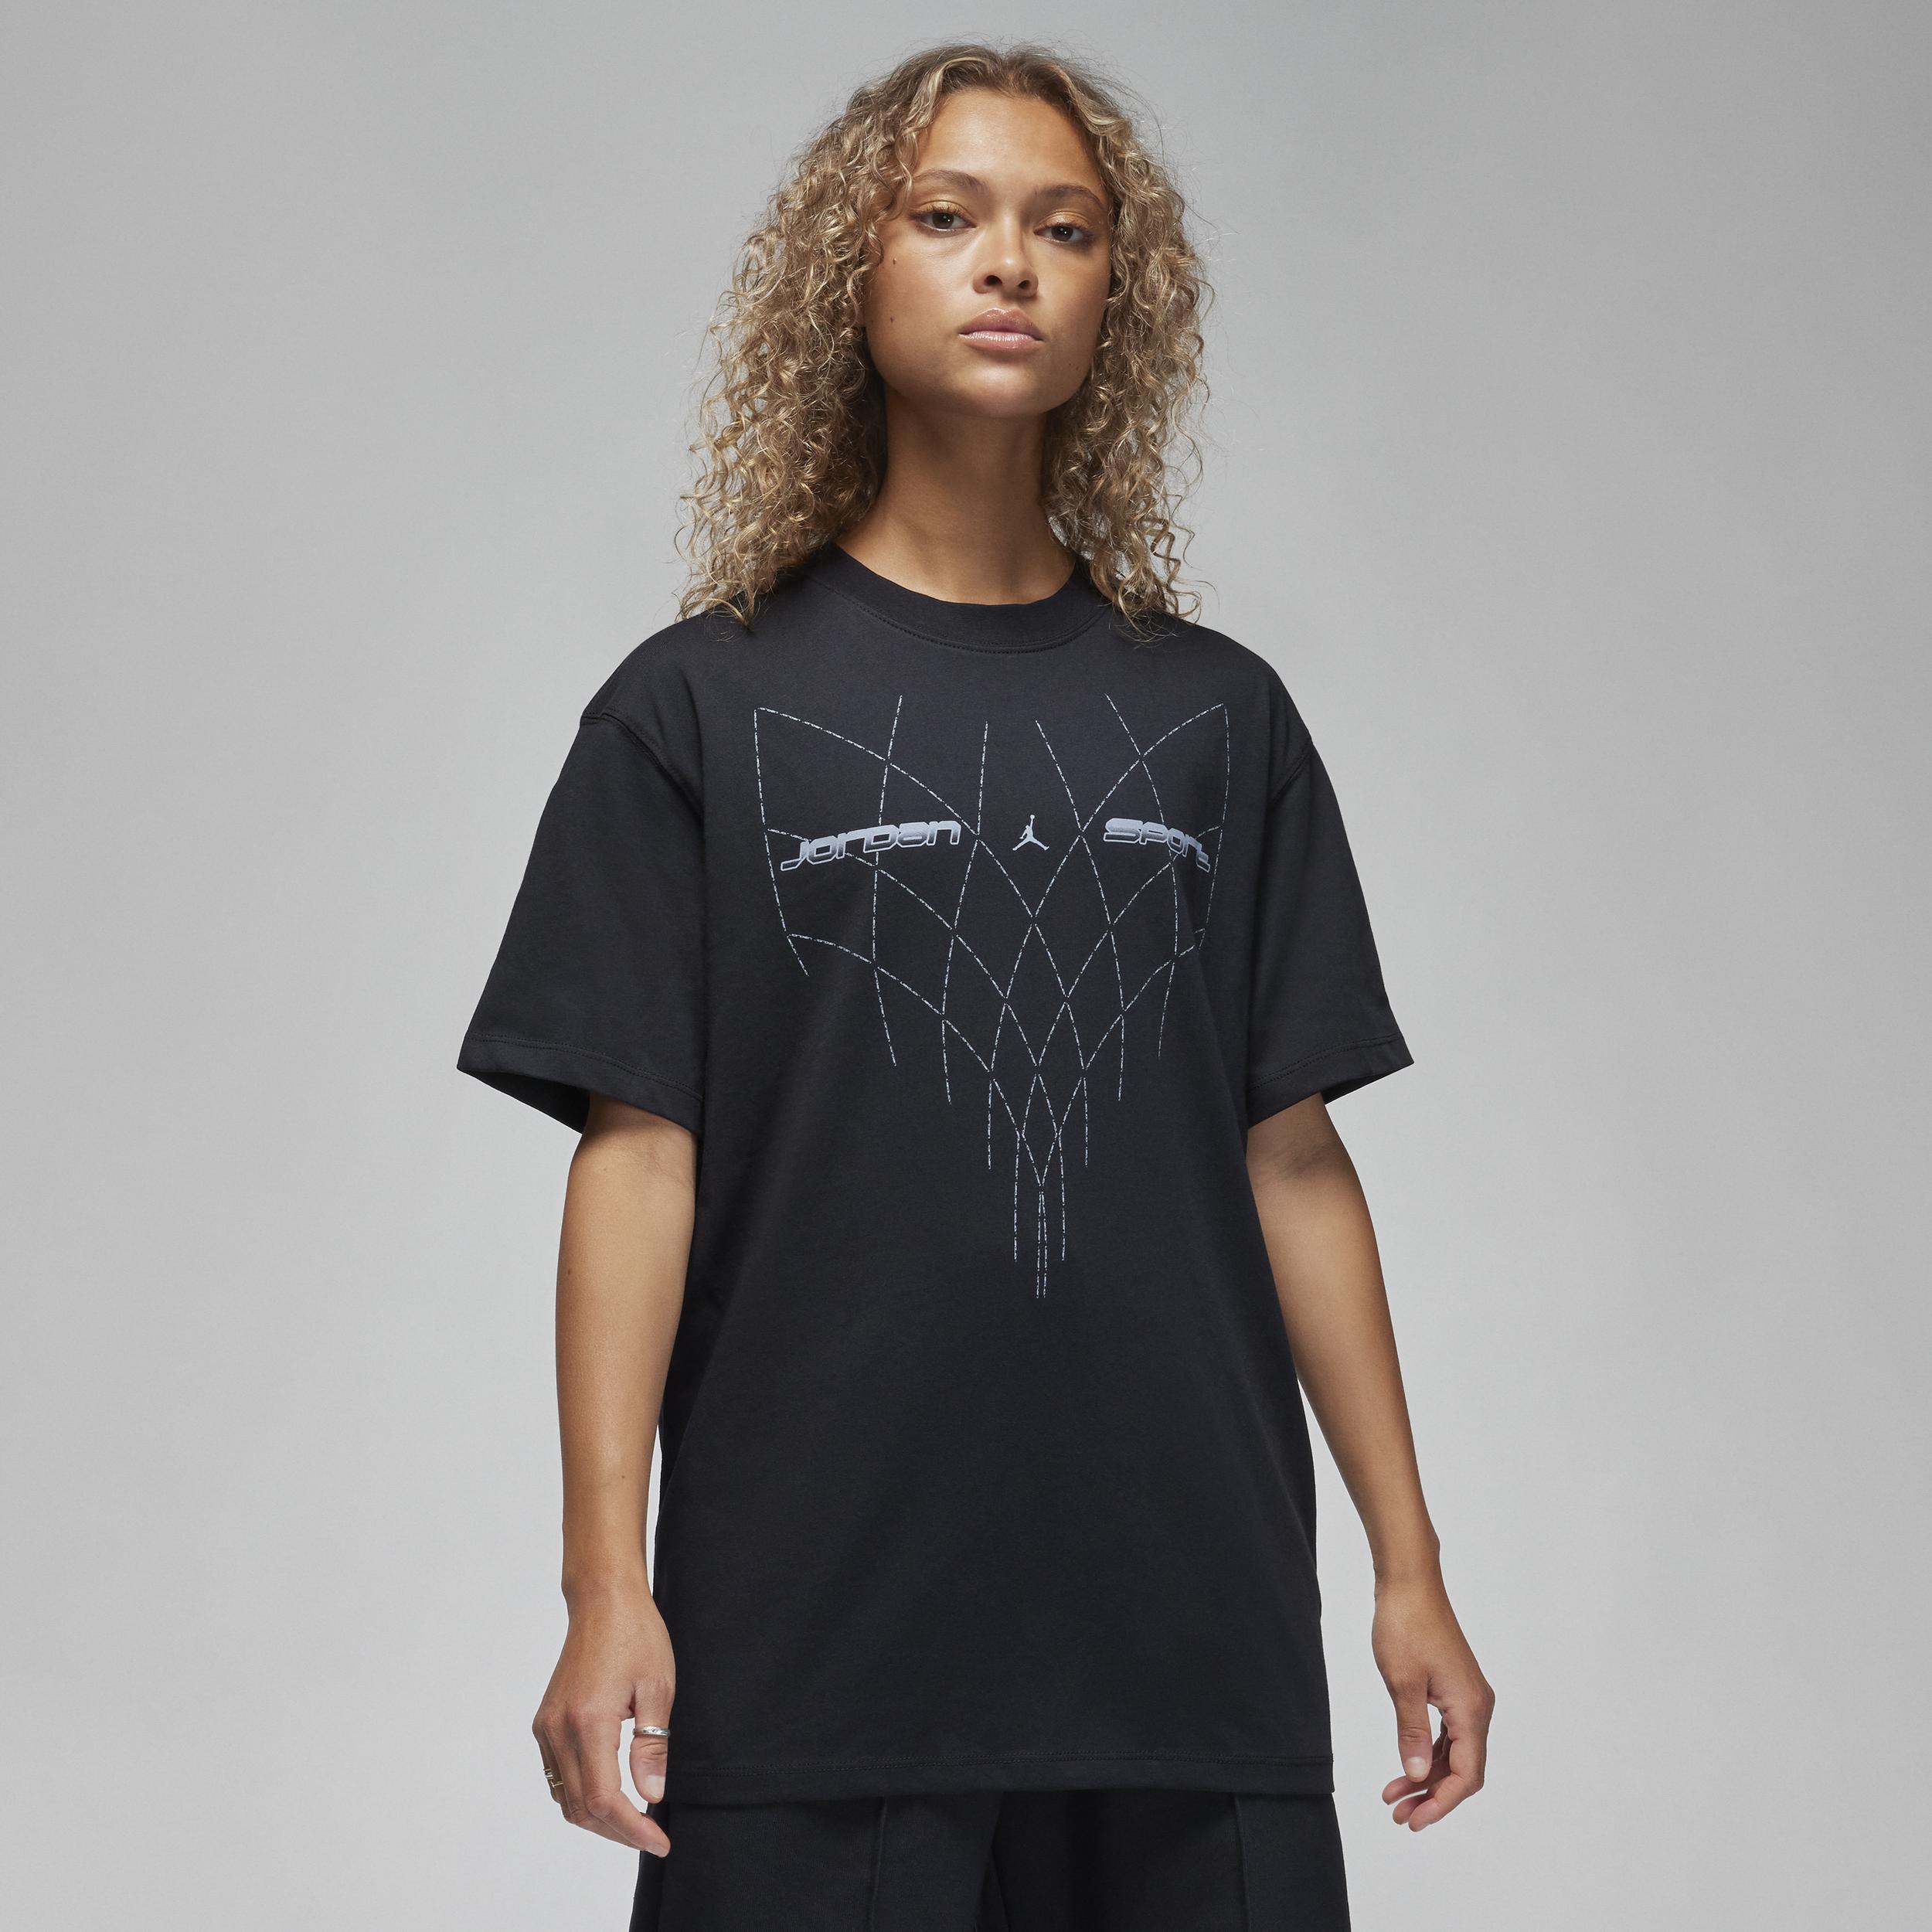 Jordan Sport T-Shirt mit Grafik für Damen - Schwarz